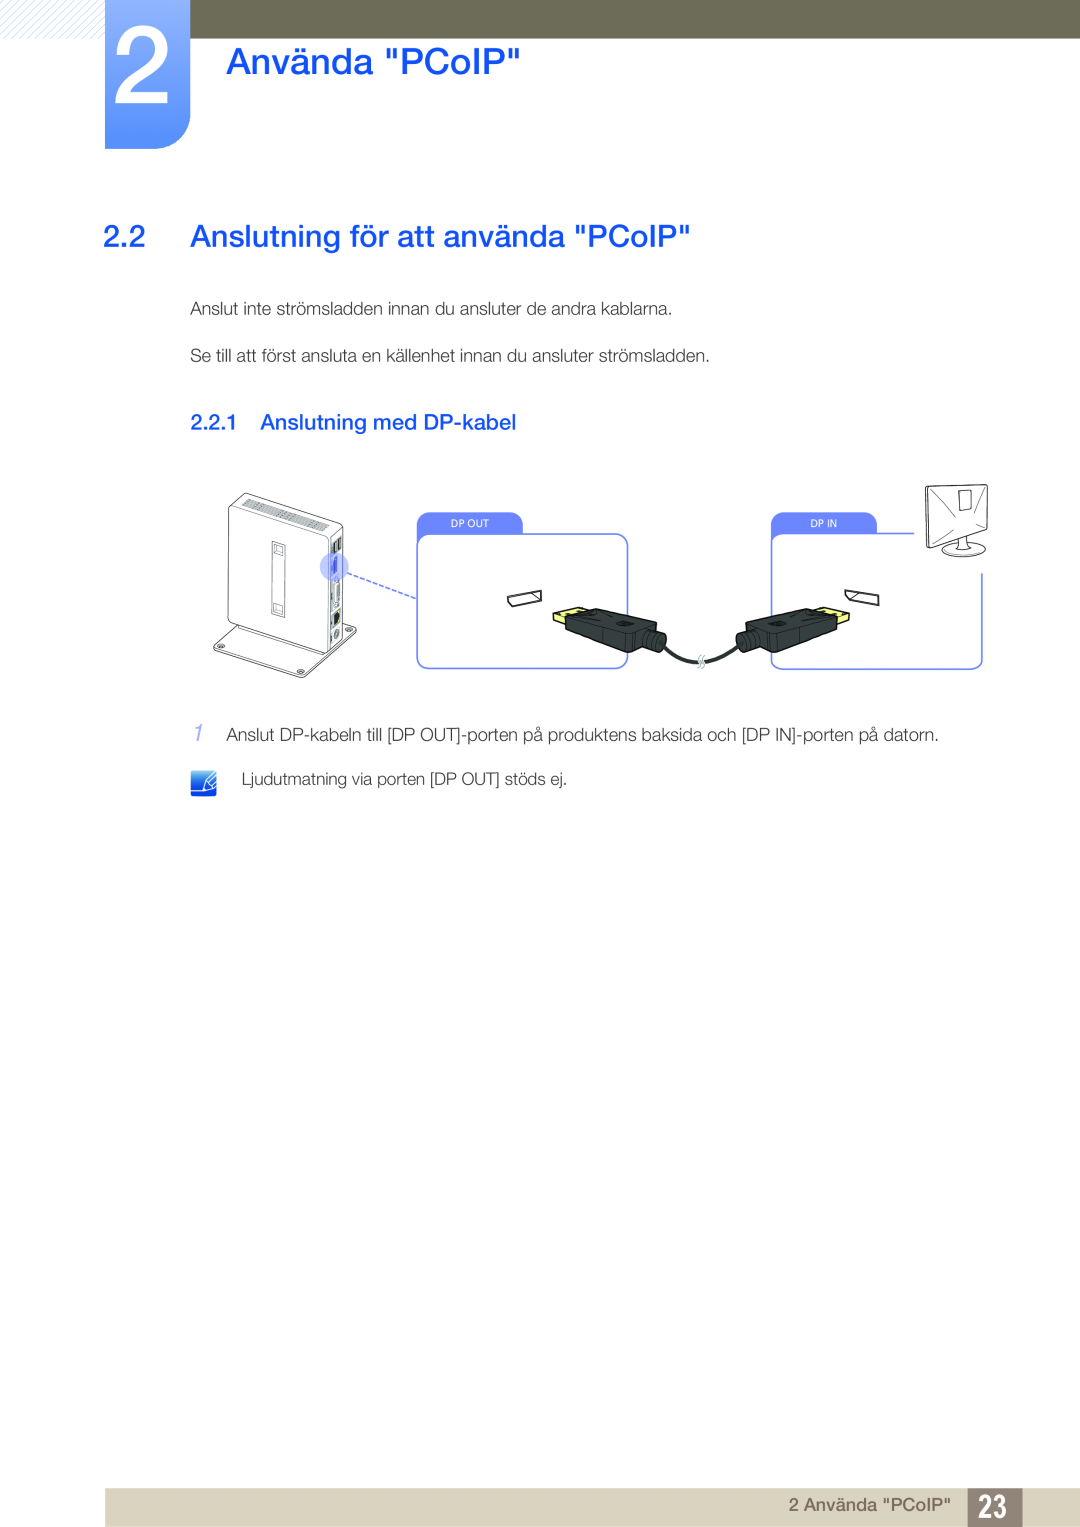 Samsung LF00FNXPFBZXEN manual Anslutning för att använda PCoIP, Anslutning med DP-kabel, 2 Använda PCoIP, Dp Out, Dp In 